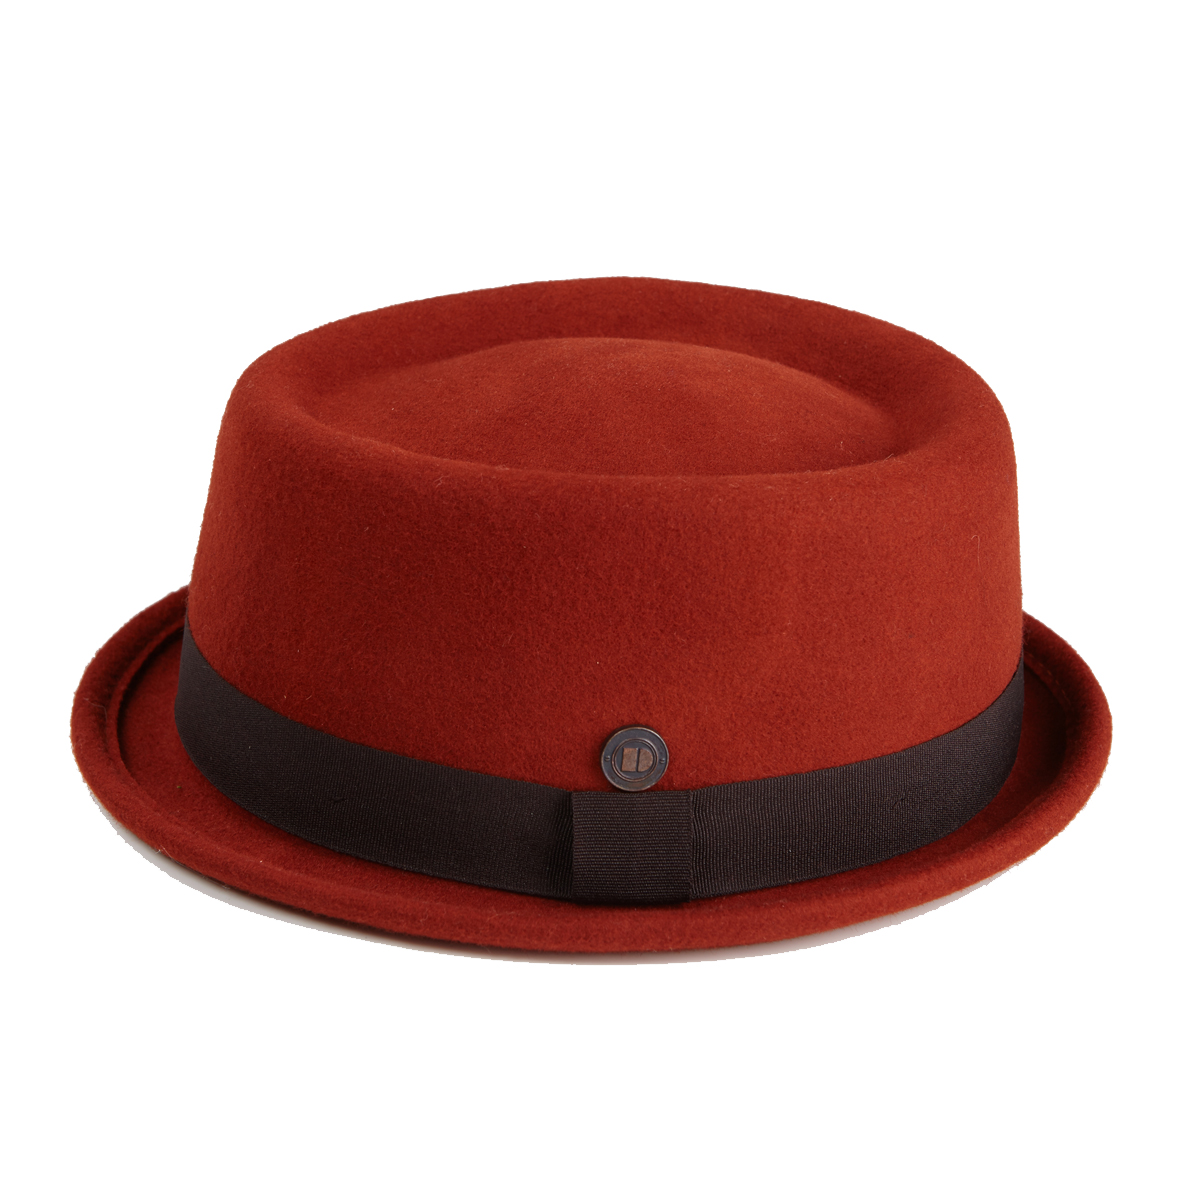 Buy Jack Terra Hat Online at £60 from Dasmarca